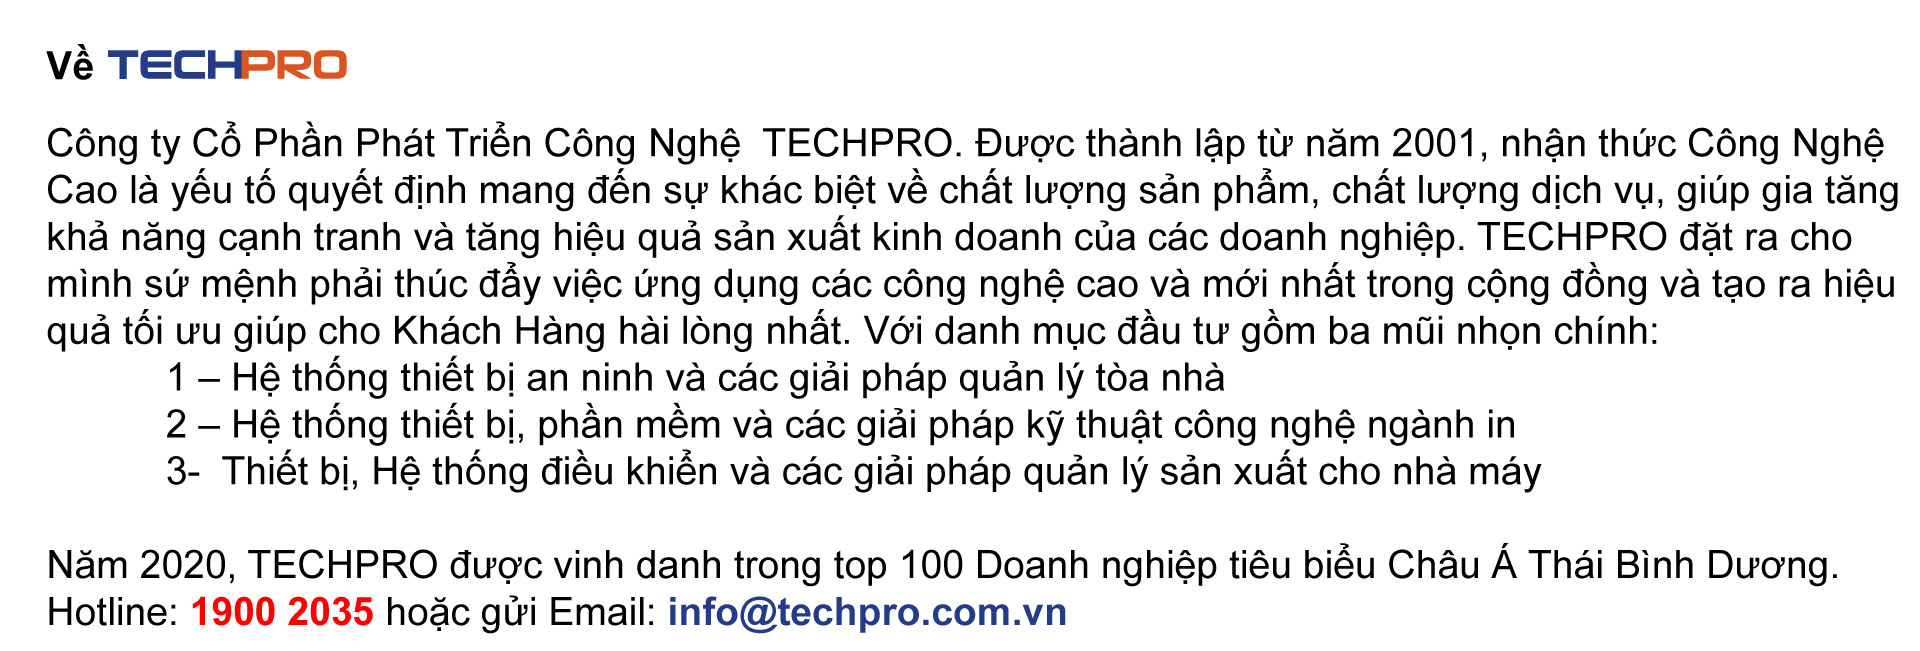 Thông tin về TECHPRO